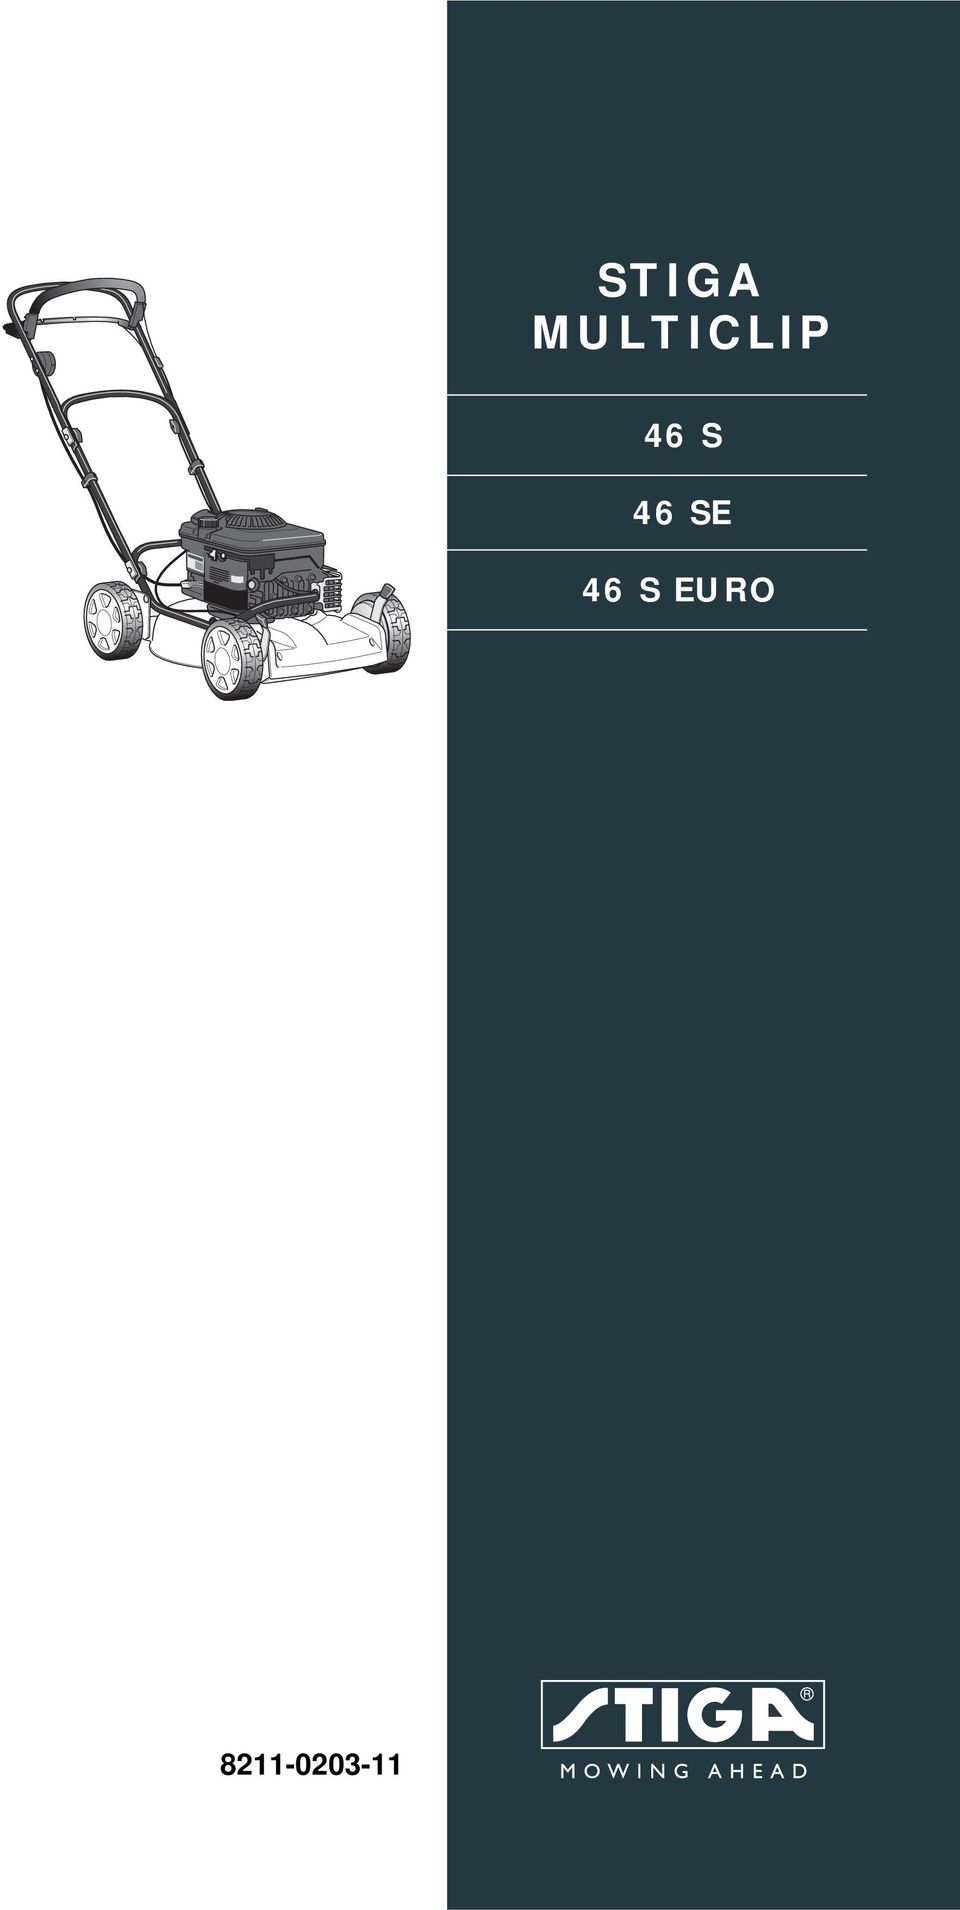 STIGA MULTICLIP 46 S 46 SE 46 S EURO - PDF Free Download